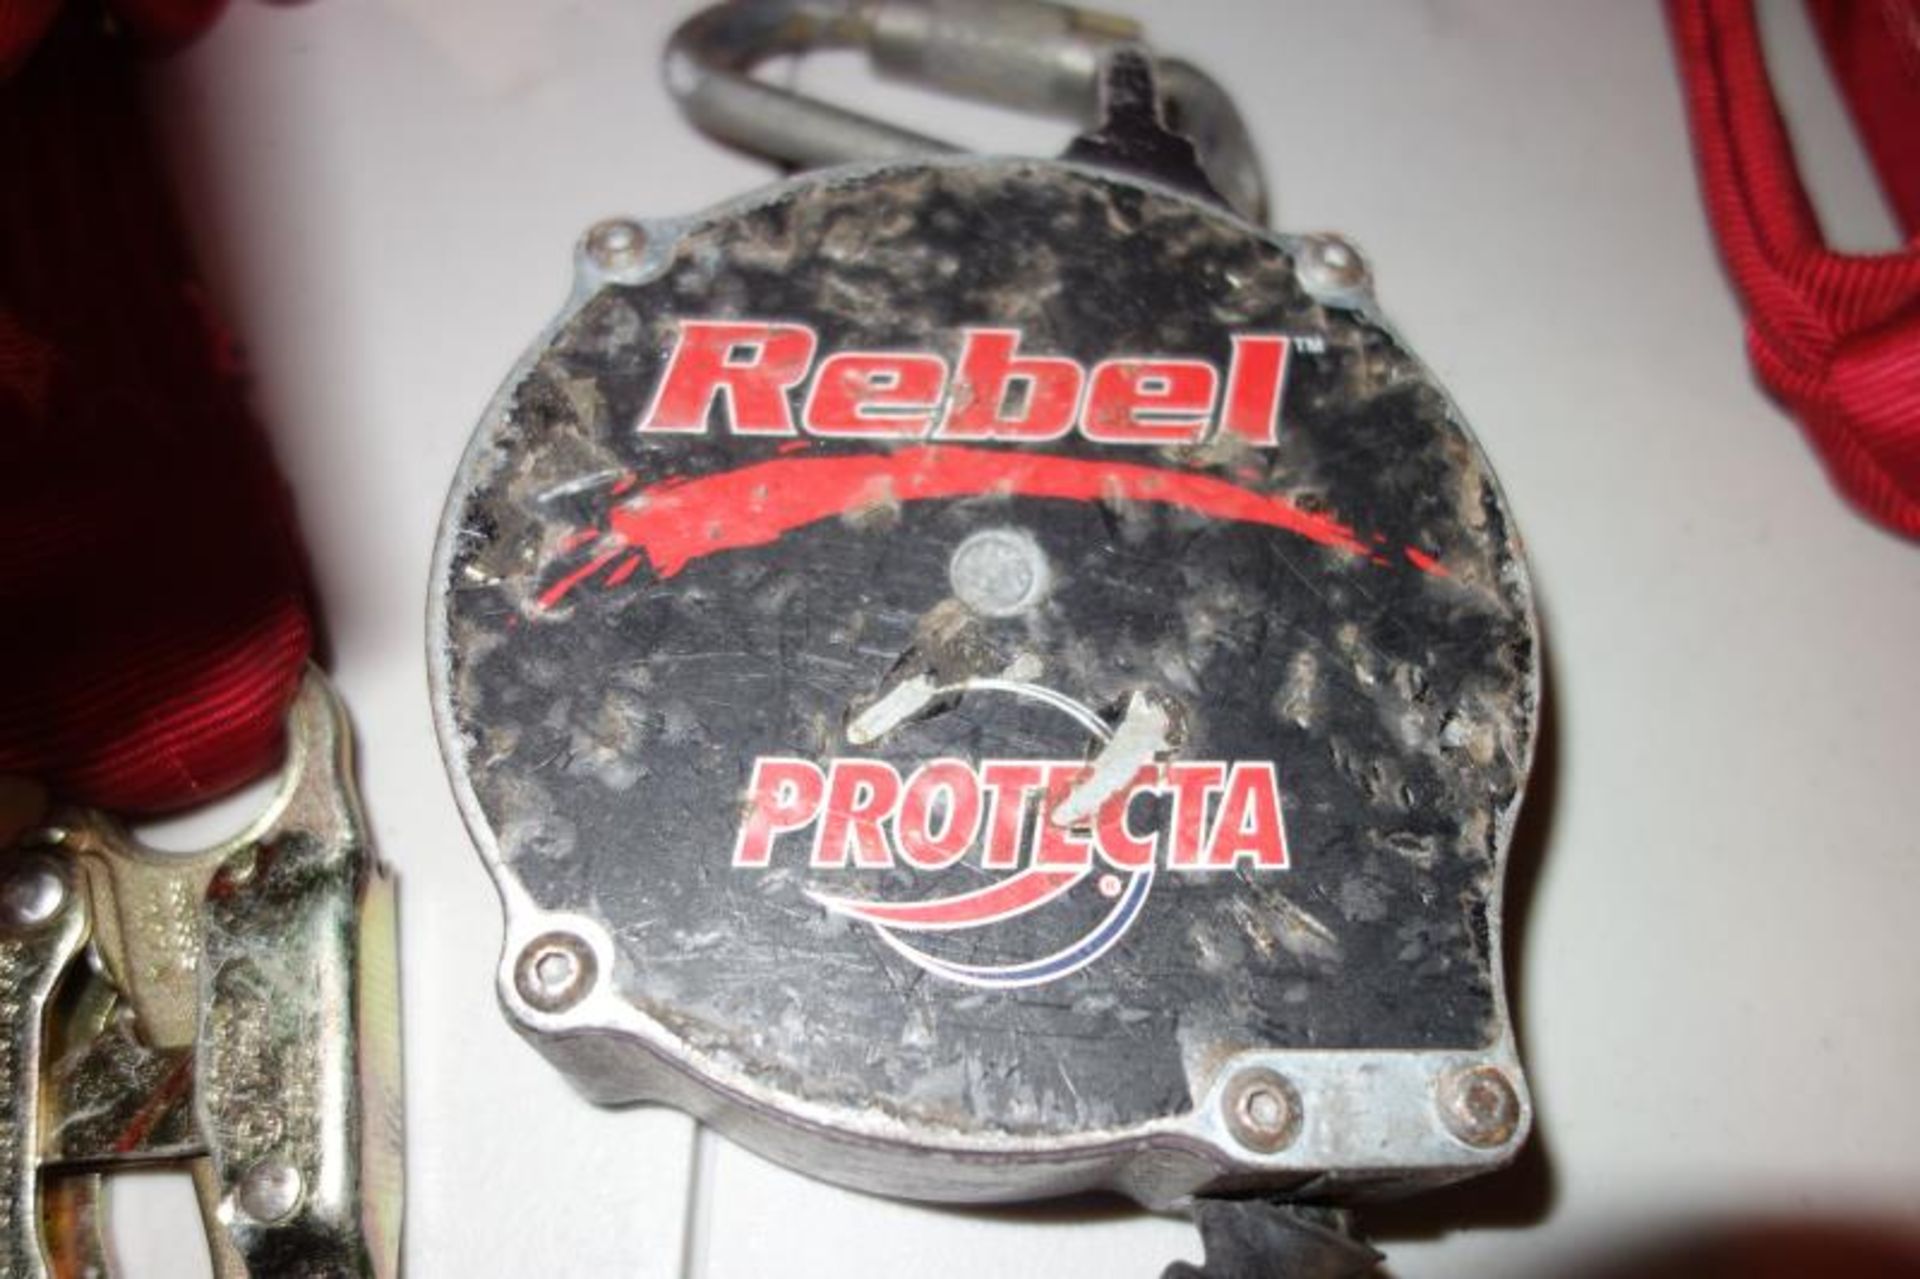 Rebel Protecta Lifeline - Image 3 of 4